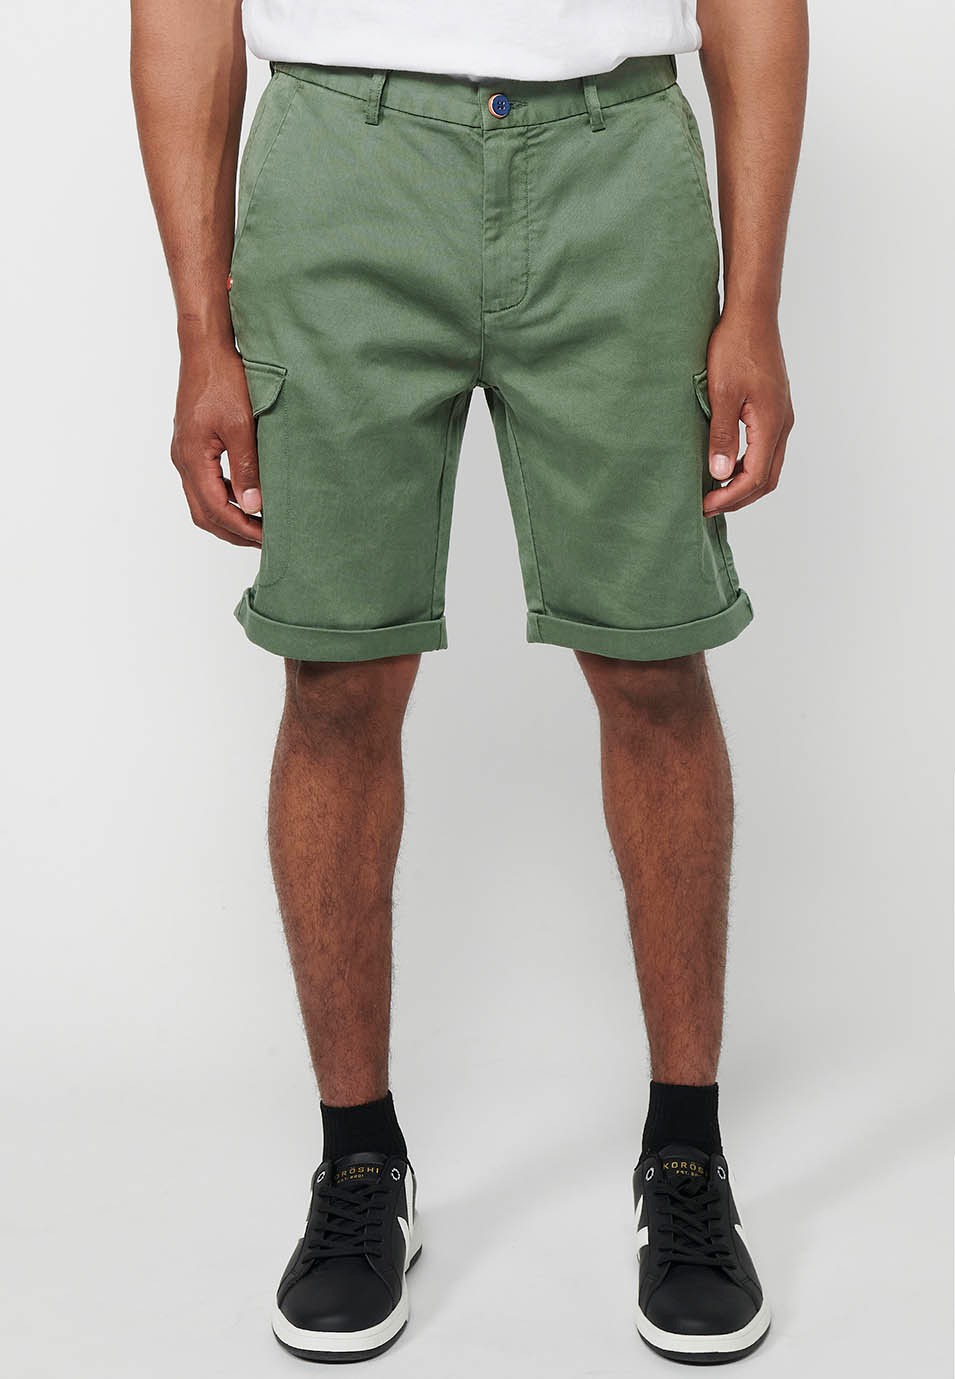 Pantalons curts amb Cintura engomada i tancament amb cremallera i botó amb Butxaques, dos laterals amb solapa de Color Verd per a Home 1